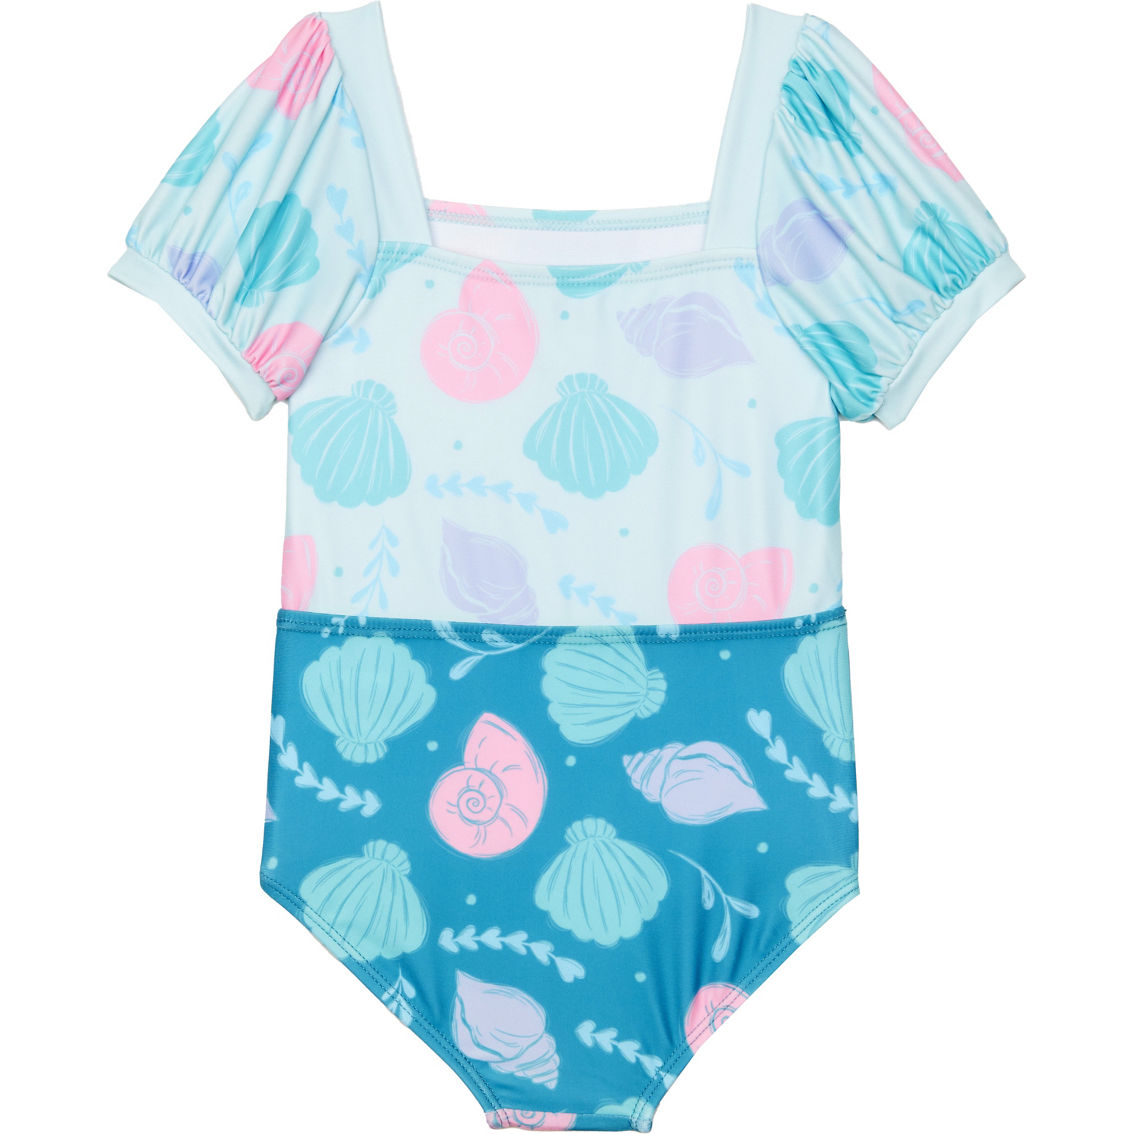 Disney Toddler Girls Ariel Swimsuit - Image 2 of 2